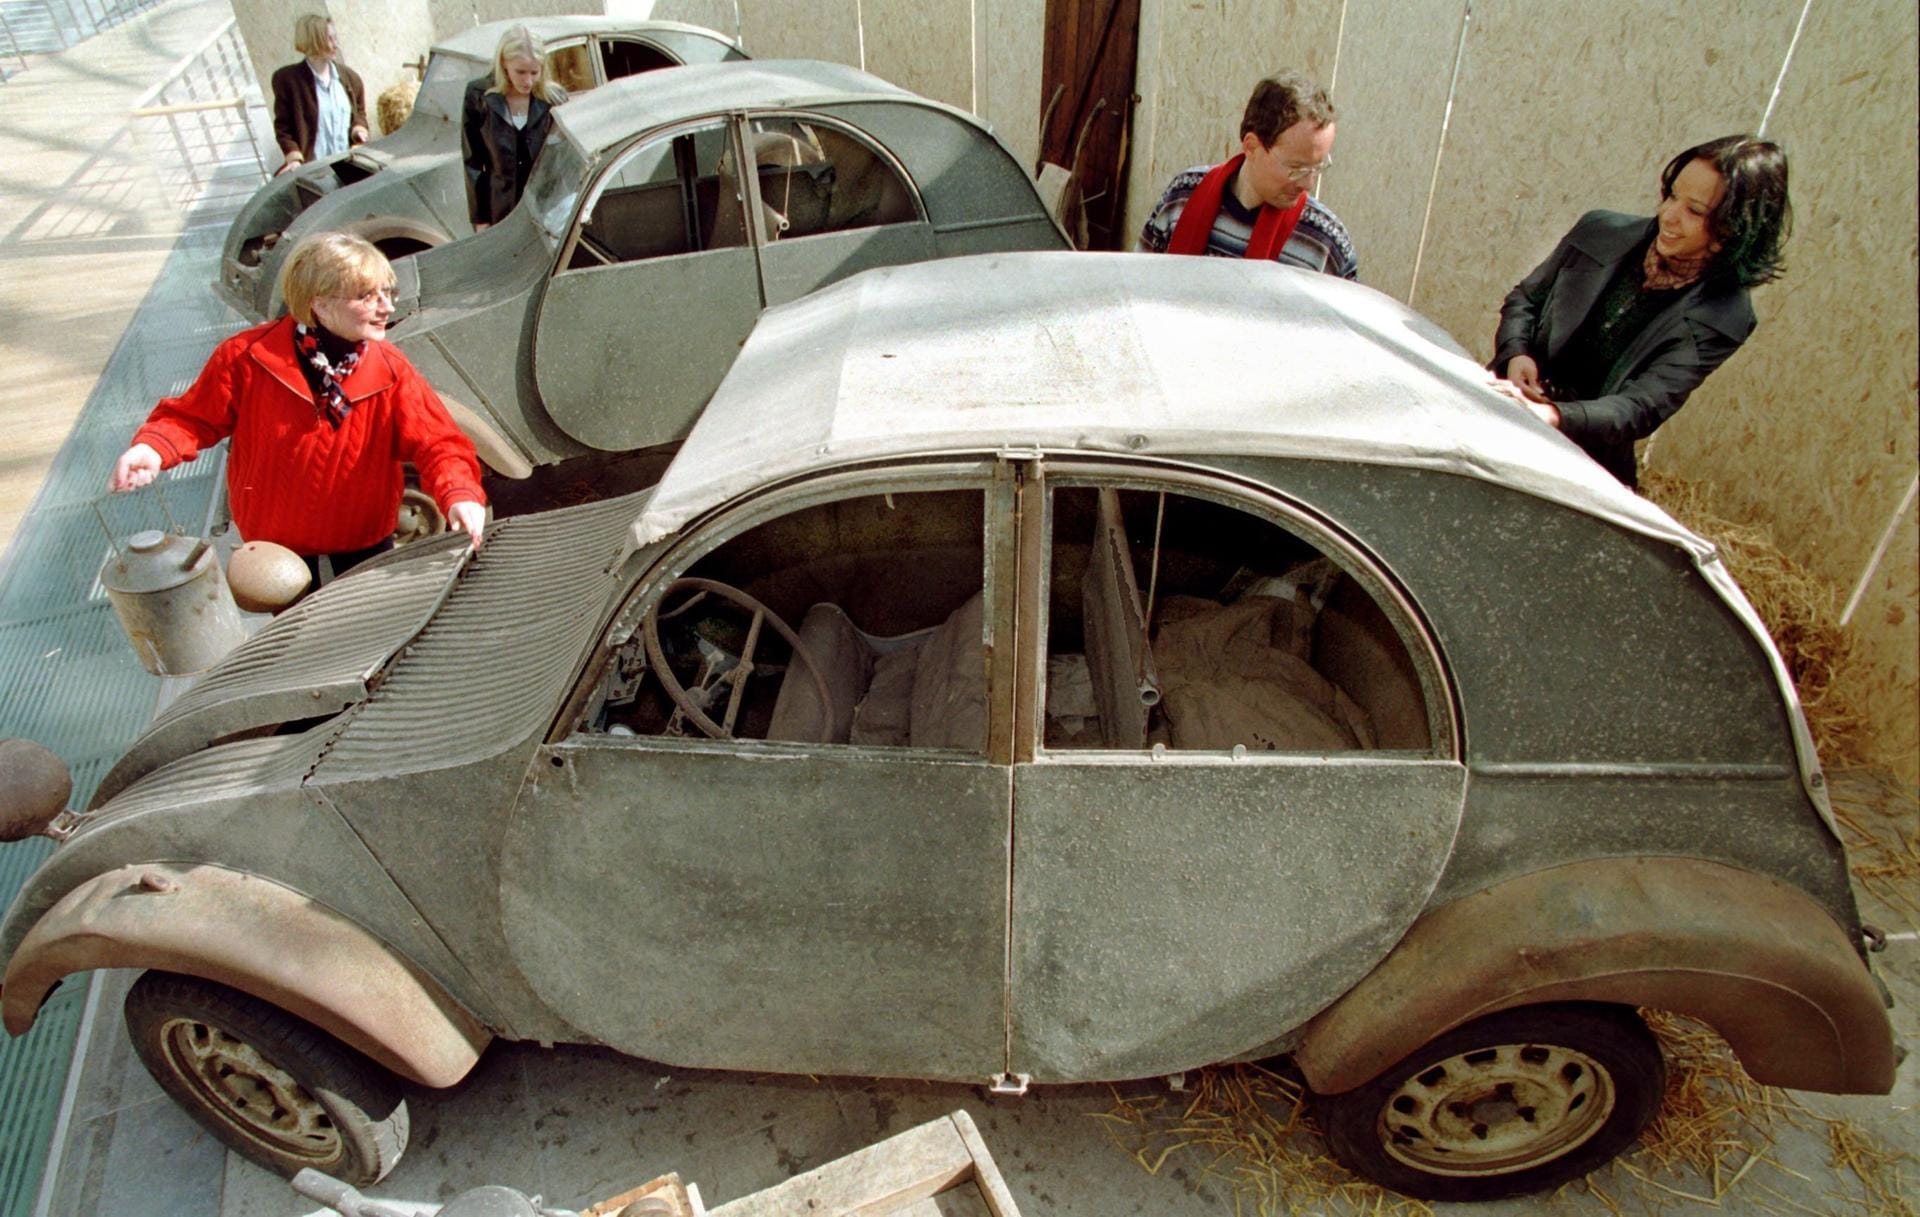 Drei unrestaurierte "Ur-Enten": Die Wagen vom Typ 2 CV des französischen Autoherstellers Citroen aus dem Jahre 1939 wurden auf einer Automesse in Leipzig erstmals außerhalb von Frankreich gezeigt.